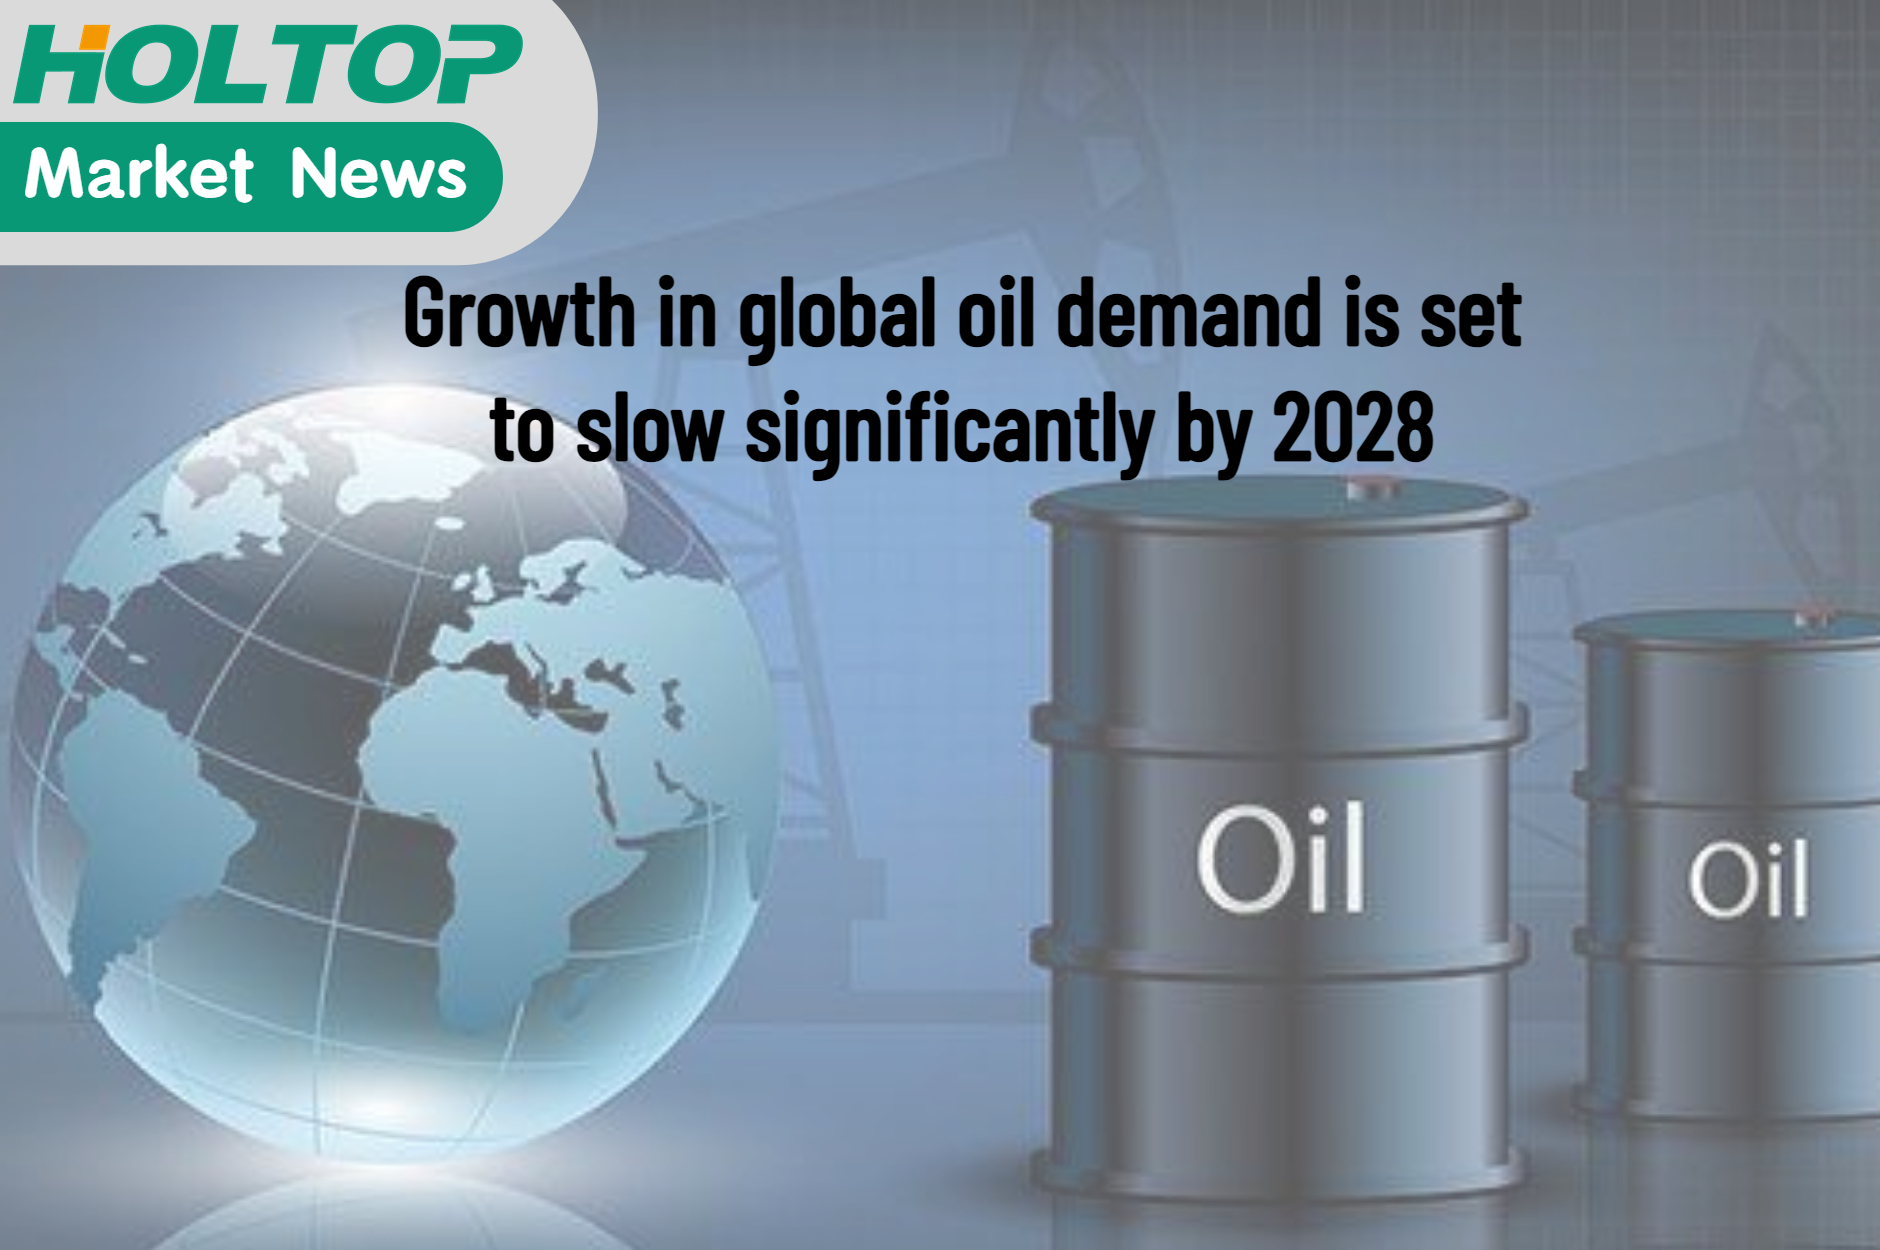 La crescita della domanda globale di petrolio dovrebbe rallentare in modo significativo entro il 2028